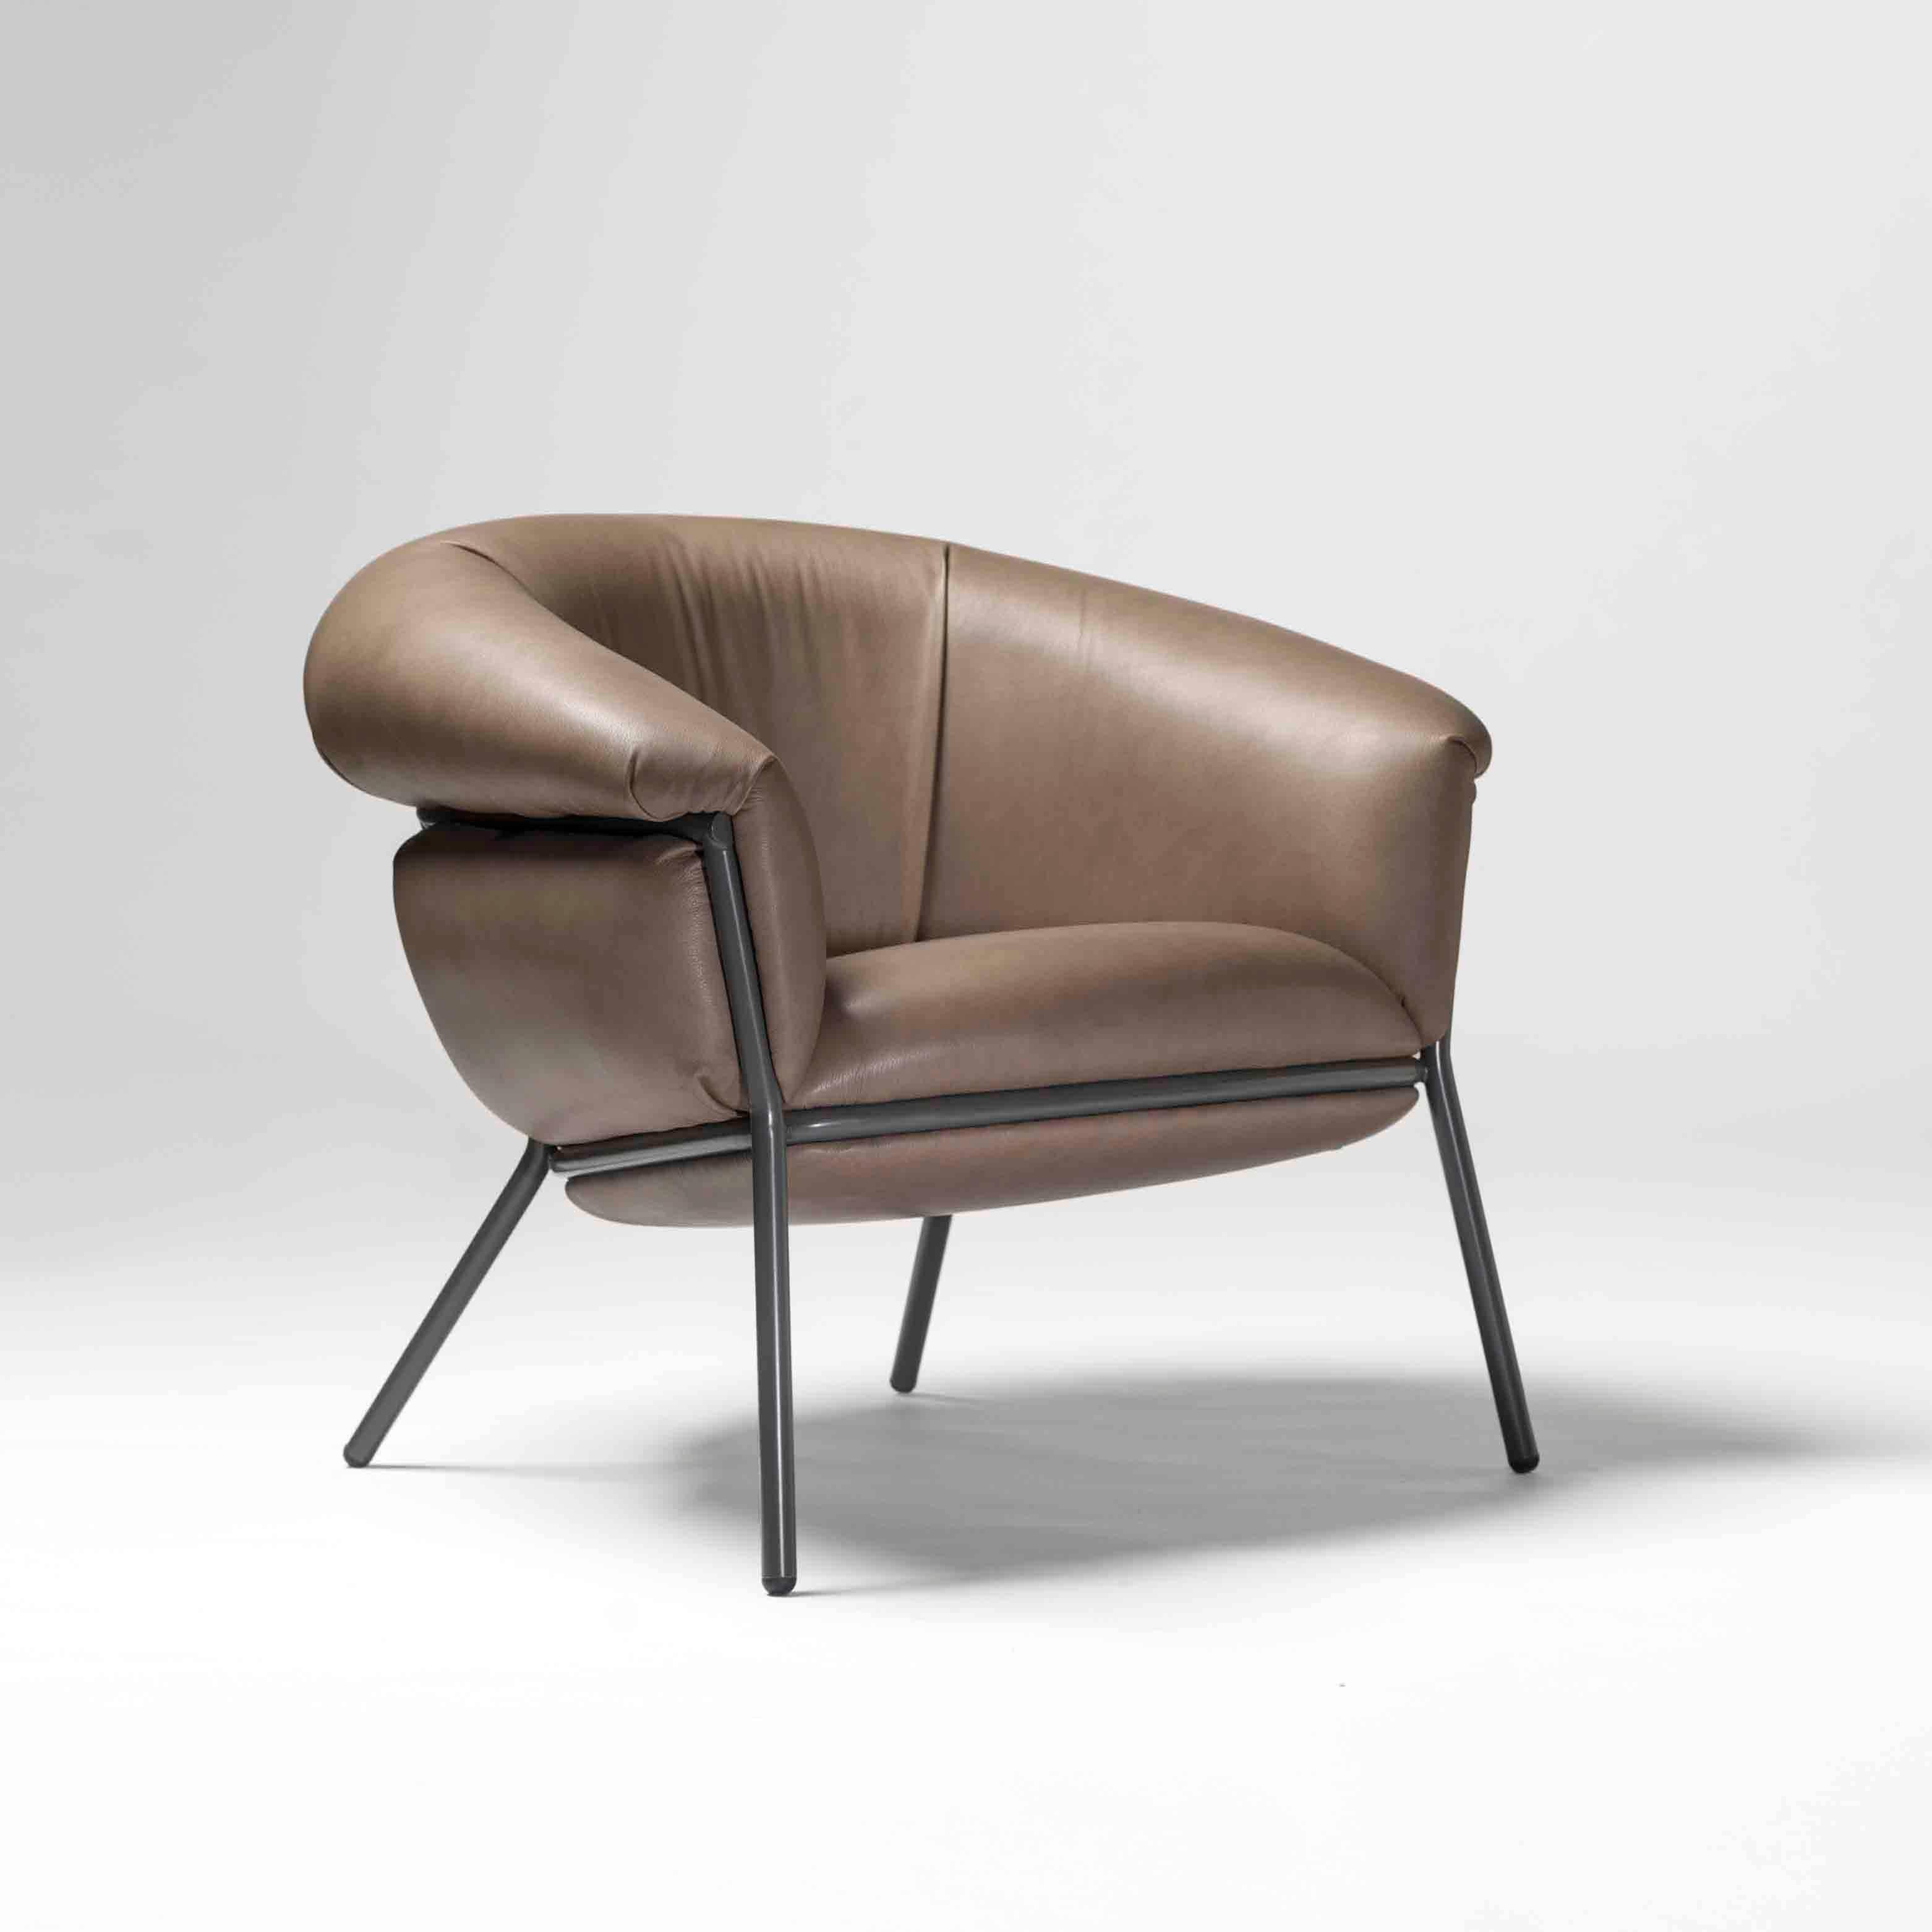 Ein Sessel aus Eisenrohr (25 mm) mit Struktur. Sitz und Rückenlehne mit Leder gepolstert.

Die Lederpolsterung legt sich über die nackte Eisenstruktur und kontrastiert mit dem luxuriösesten Gefühl der Haut.